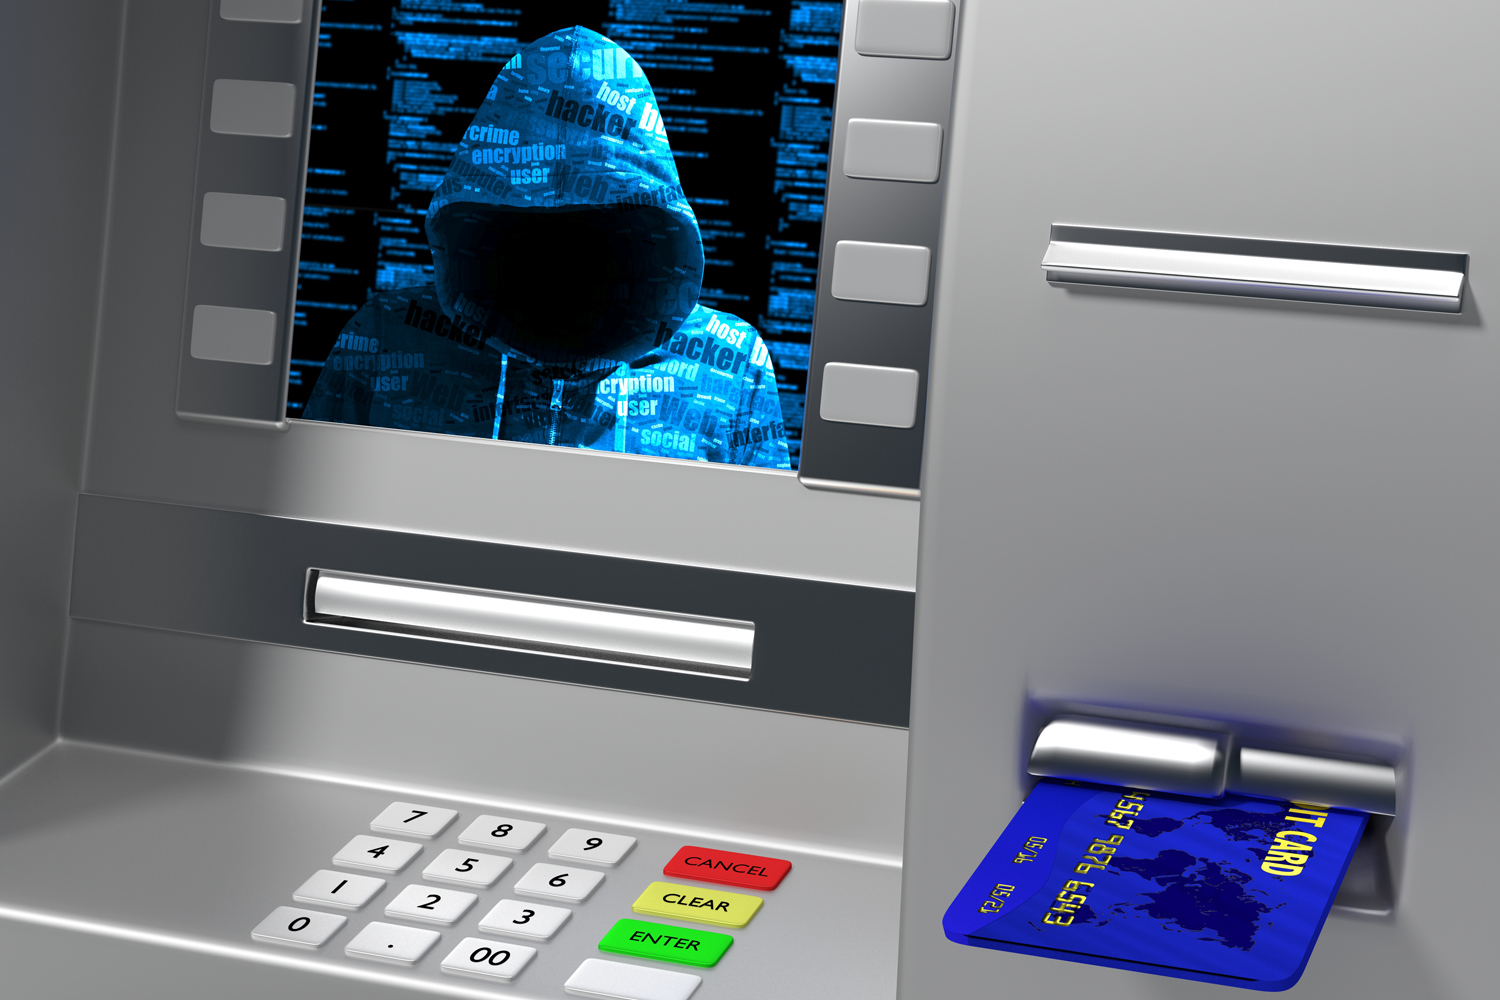 seguridad bancaria imagen de un hacker en la pantalla de un cajero automático